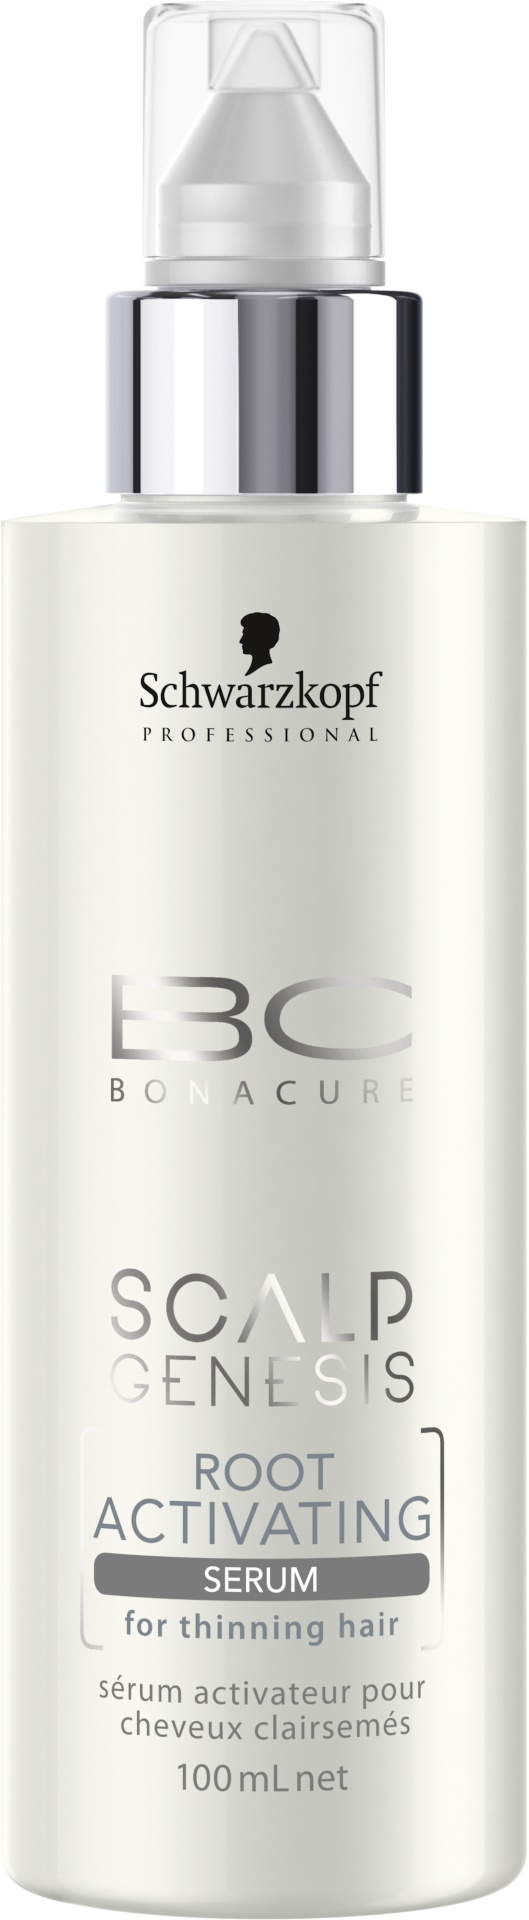 Schwarzkopf Professional BC Bonacure Scalp Genesis Root Activating Serum